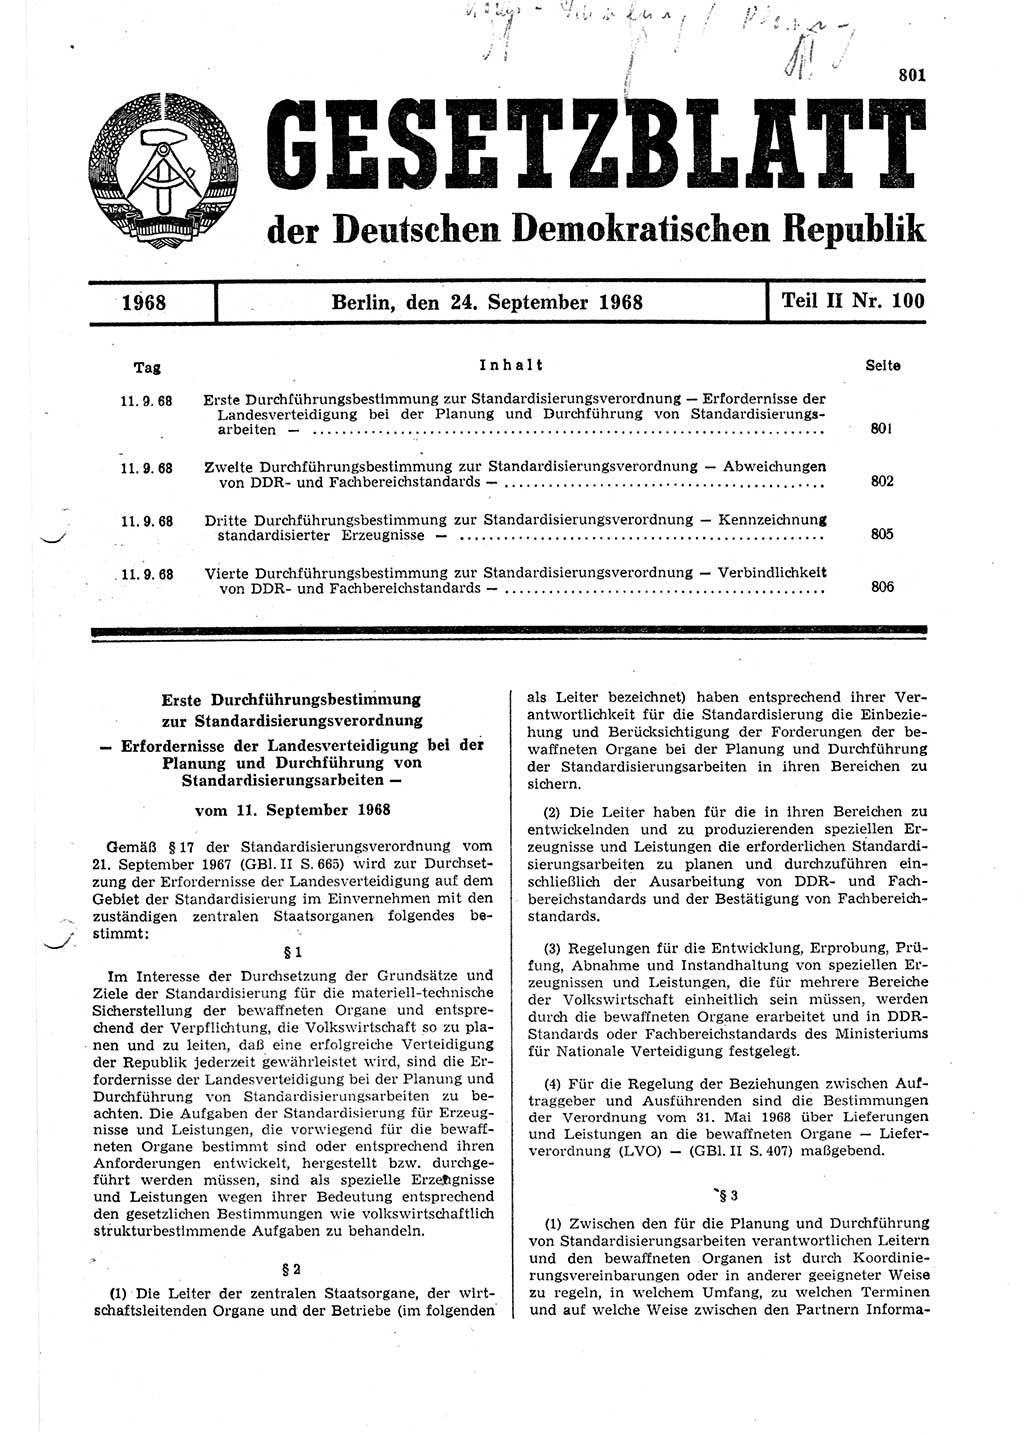 Gesetzblatt (GBl.) der Deutschen Demokratischen Republik (DDR) Teil ⅠⅠ 1968, Seite 801 (GBl. DDR ⅠⅠ 1968, S. 801)